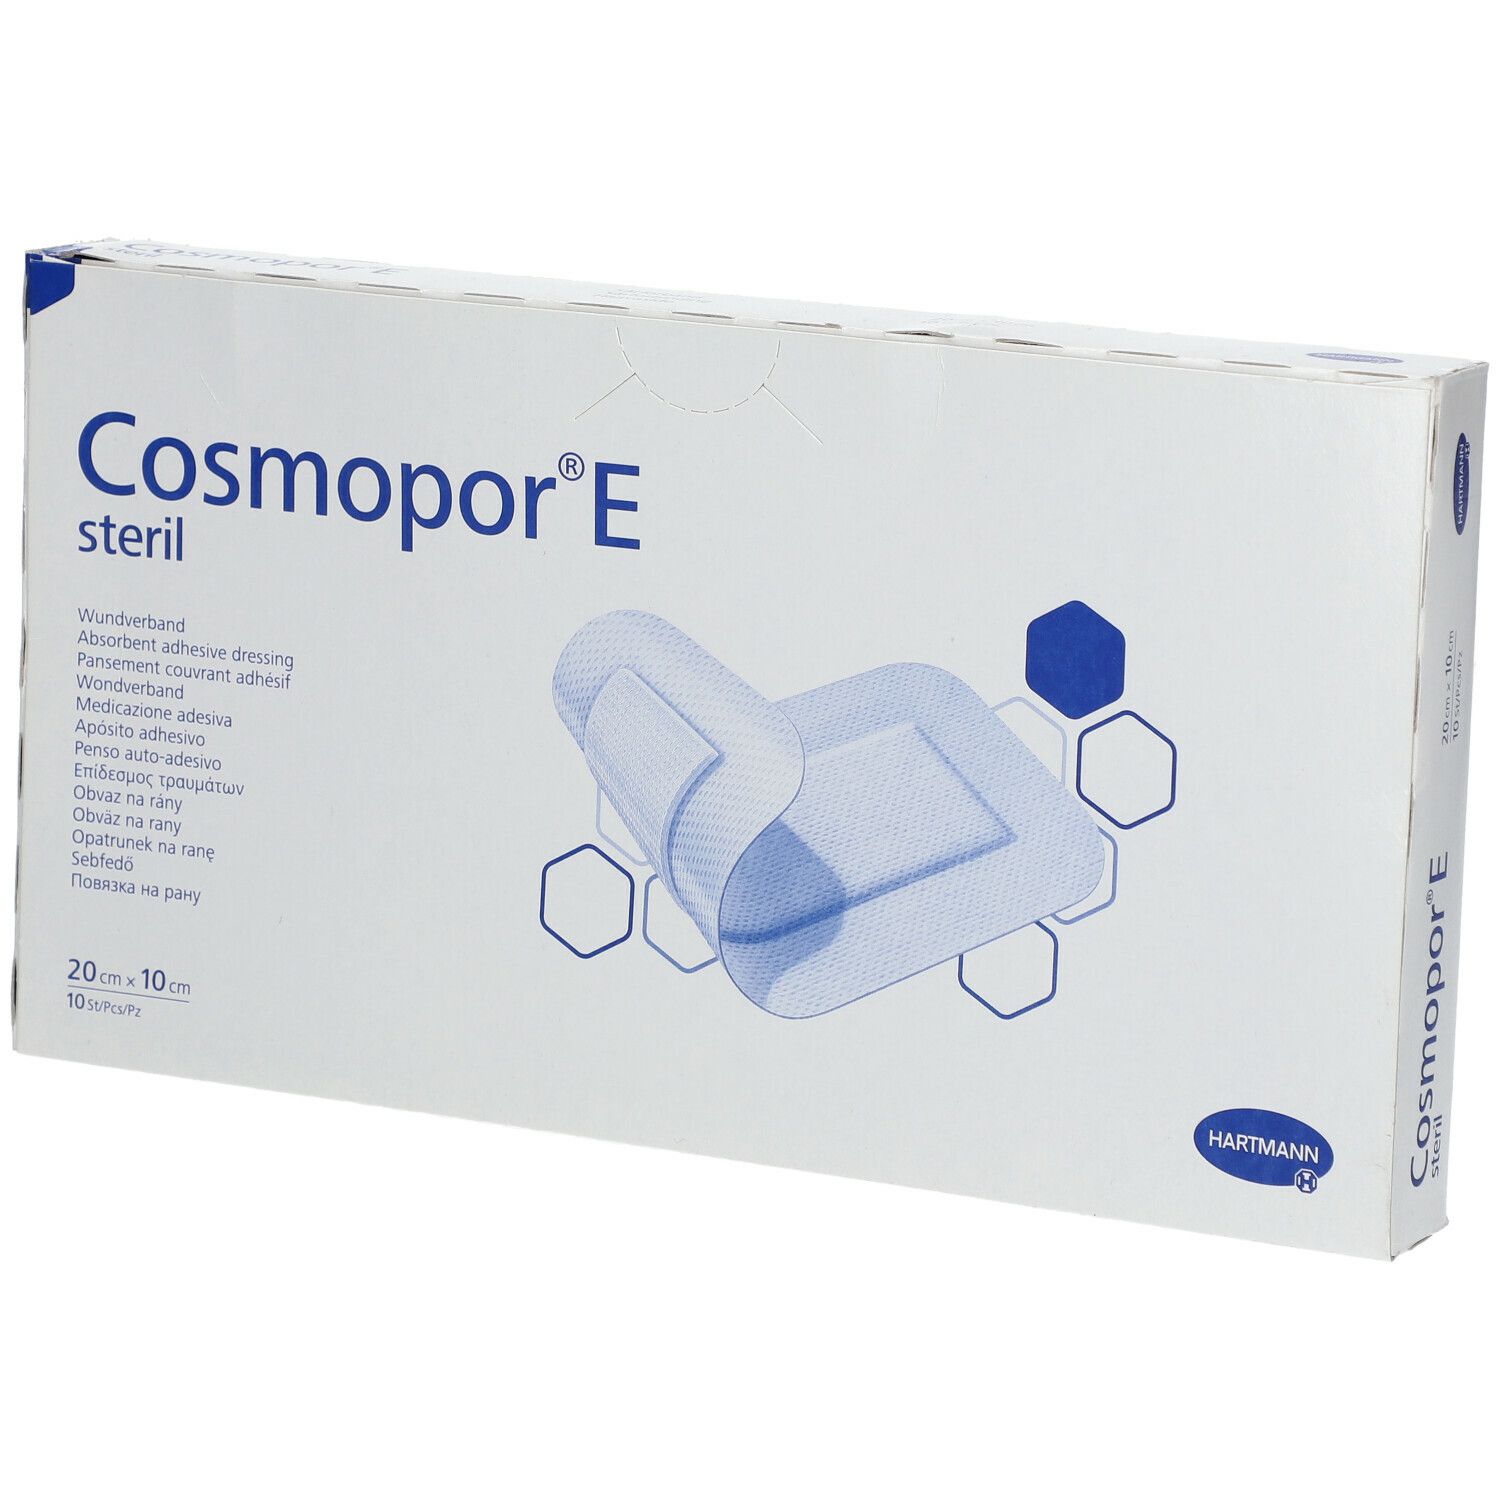 Cosmopor® E Pansement stérile autoadhésif couvrant 20 x 10 cm